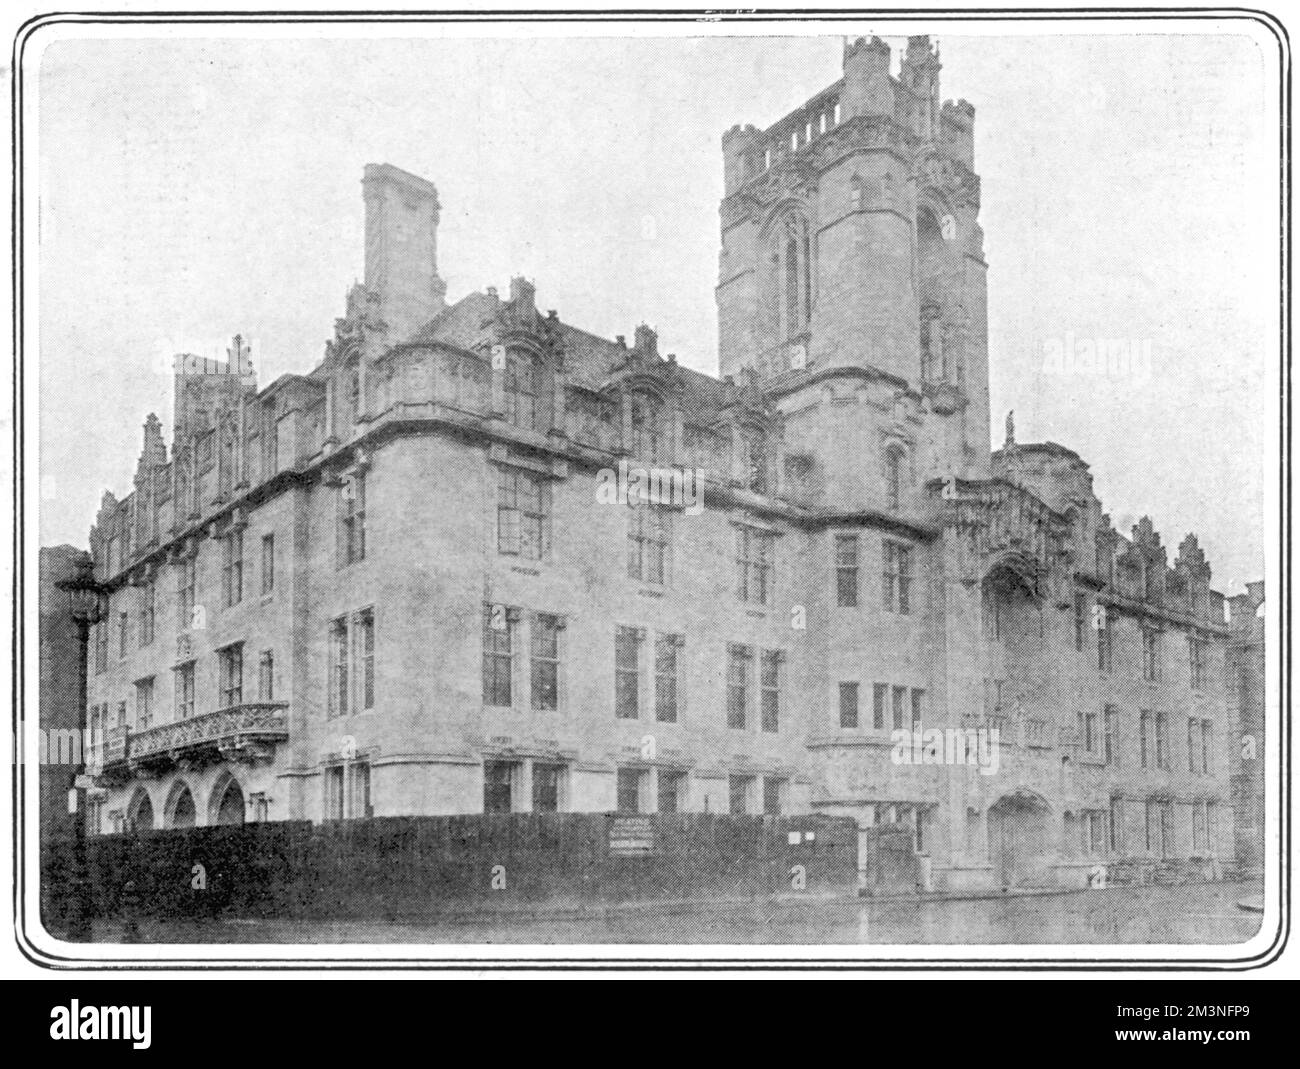 Il Middlesex Guildhall, all'angolo sud-ovest di Parliament Square a Londra. Costruito tra il 1906 e il 1913, nel 2007 è stato chiuso per lavori di ristrutturazione per essere trasformato nel sito della nuova Corte Suprema del Regno Unito. Data: 1913 Foto Stock